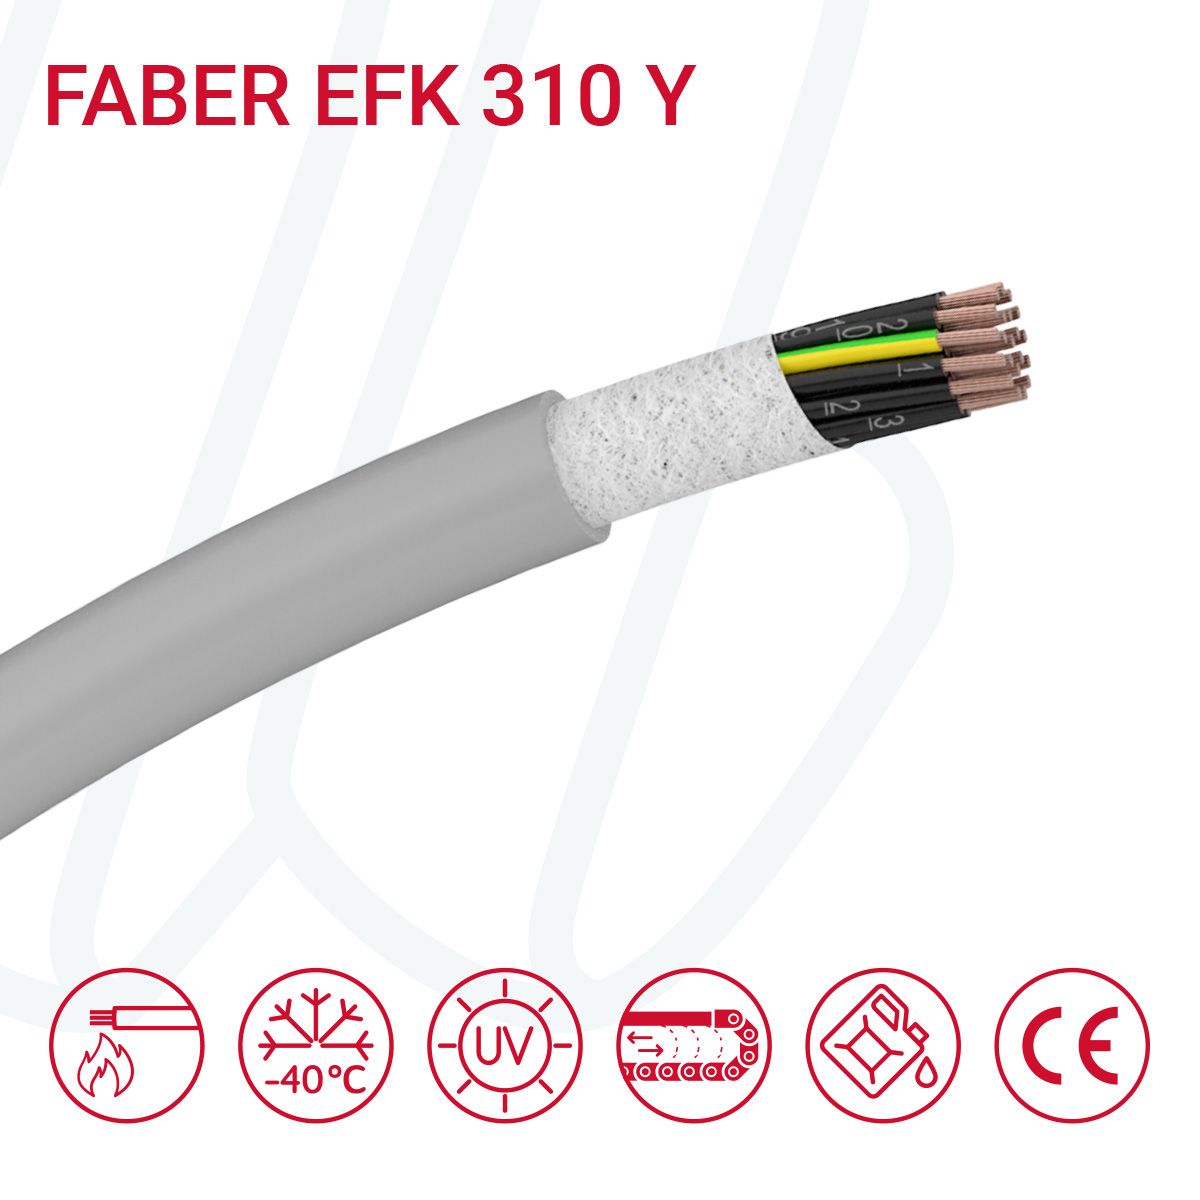 Кабель FABER EFK 310 Y 12G0.5 cUL сірий, 12, 0.5